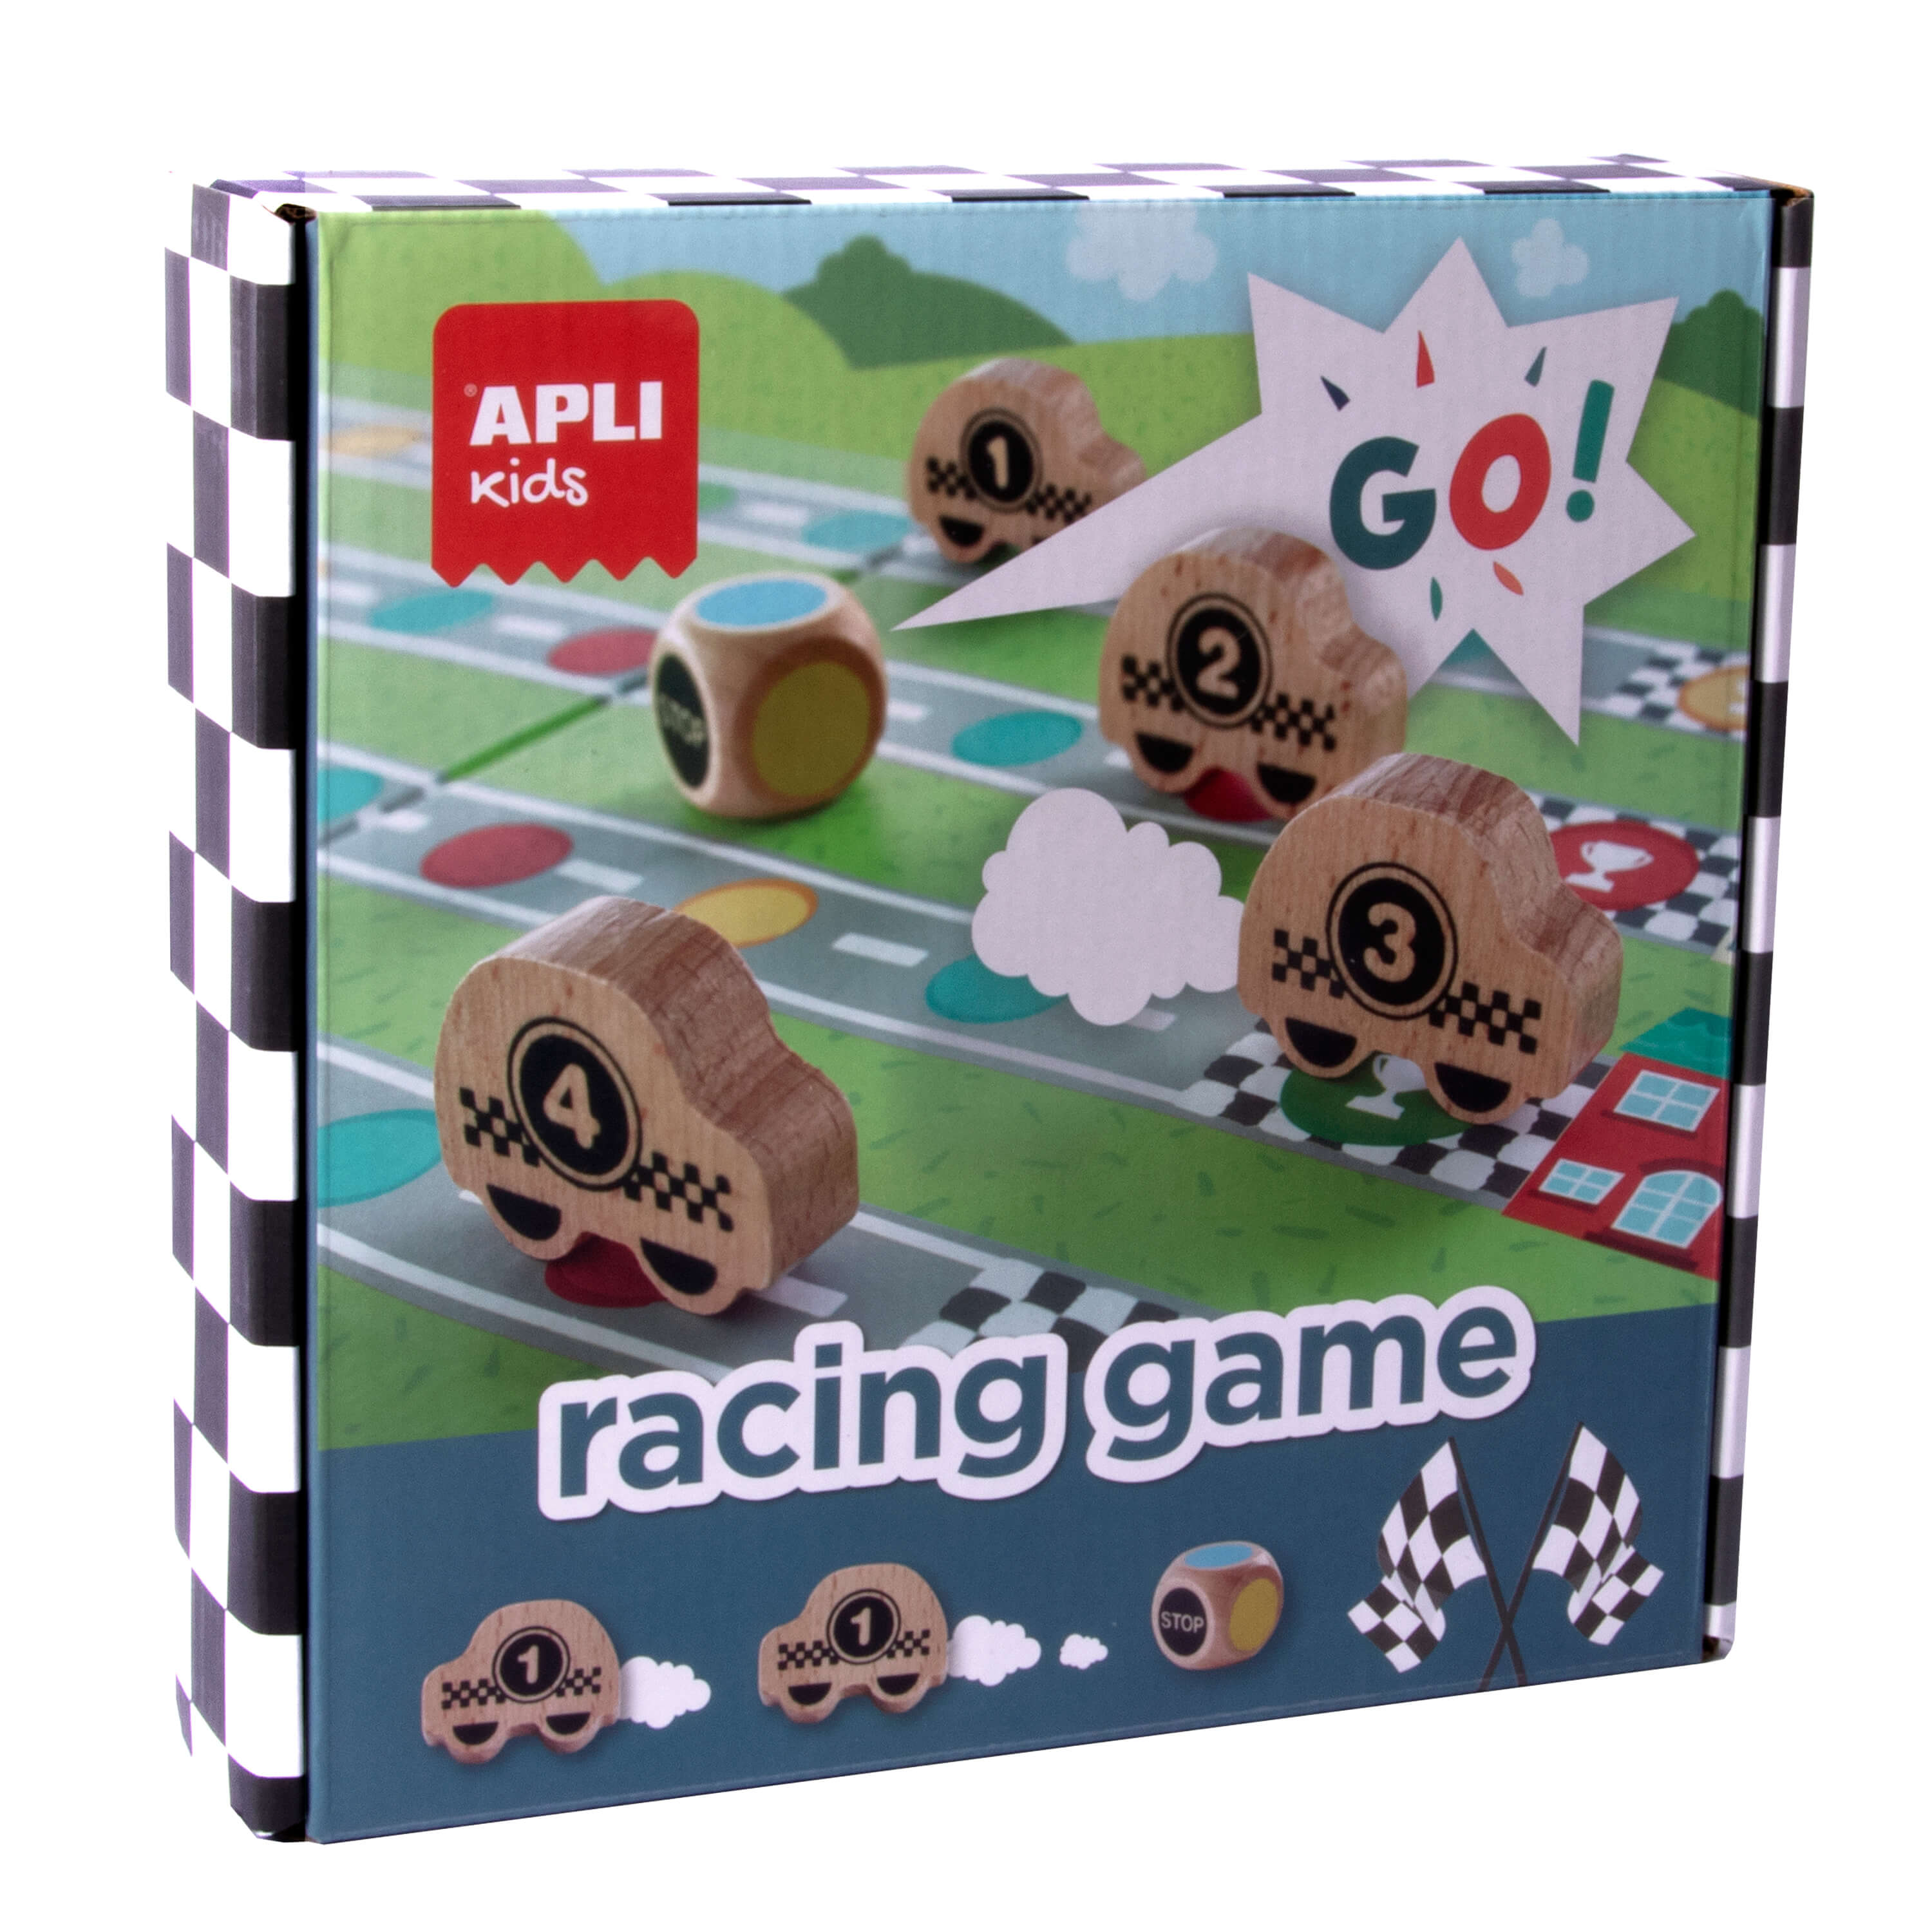 Jeu de société Apli Racing Game - Plateau amovible - 4 pièces en bois en forme de voiture - Dés colorés - Apprend à respecter les règles - Coloré